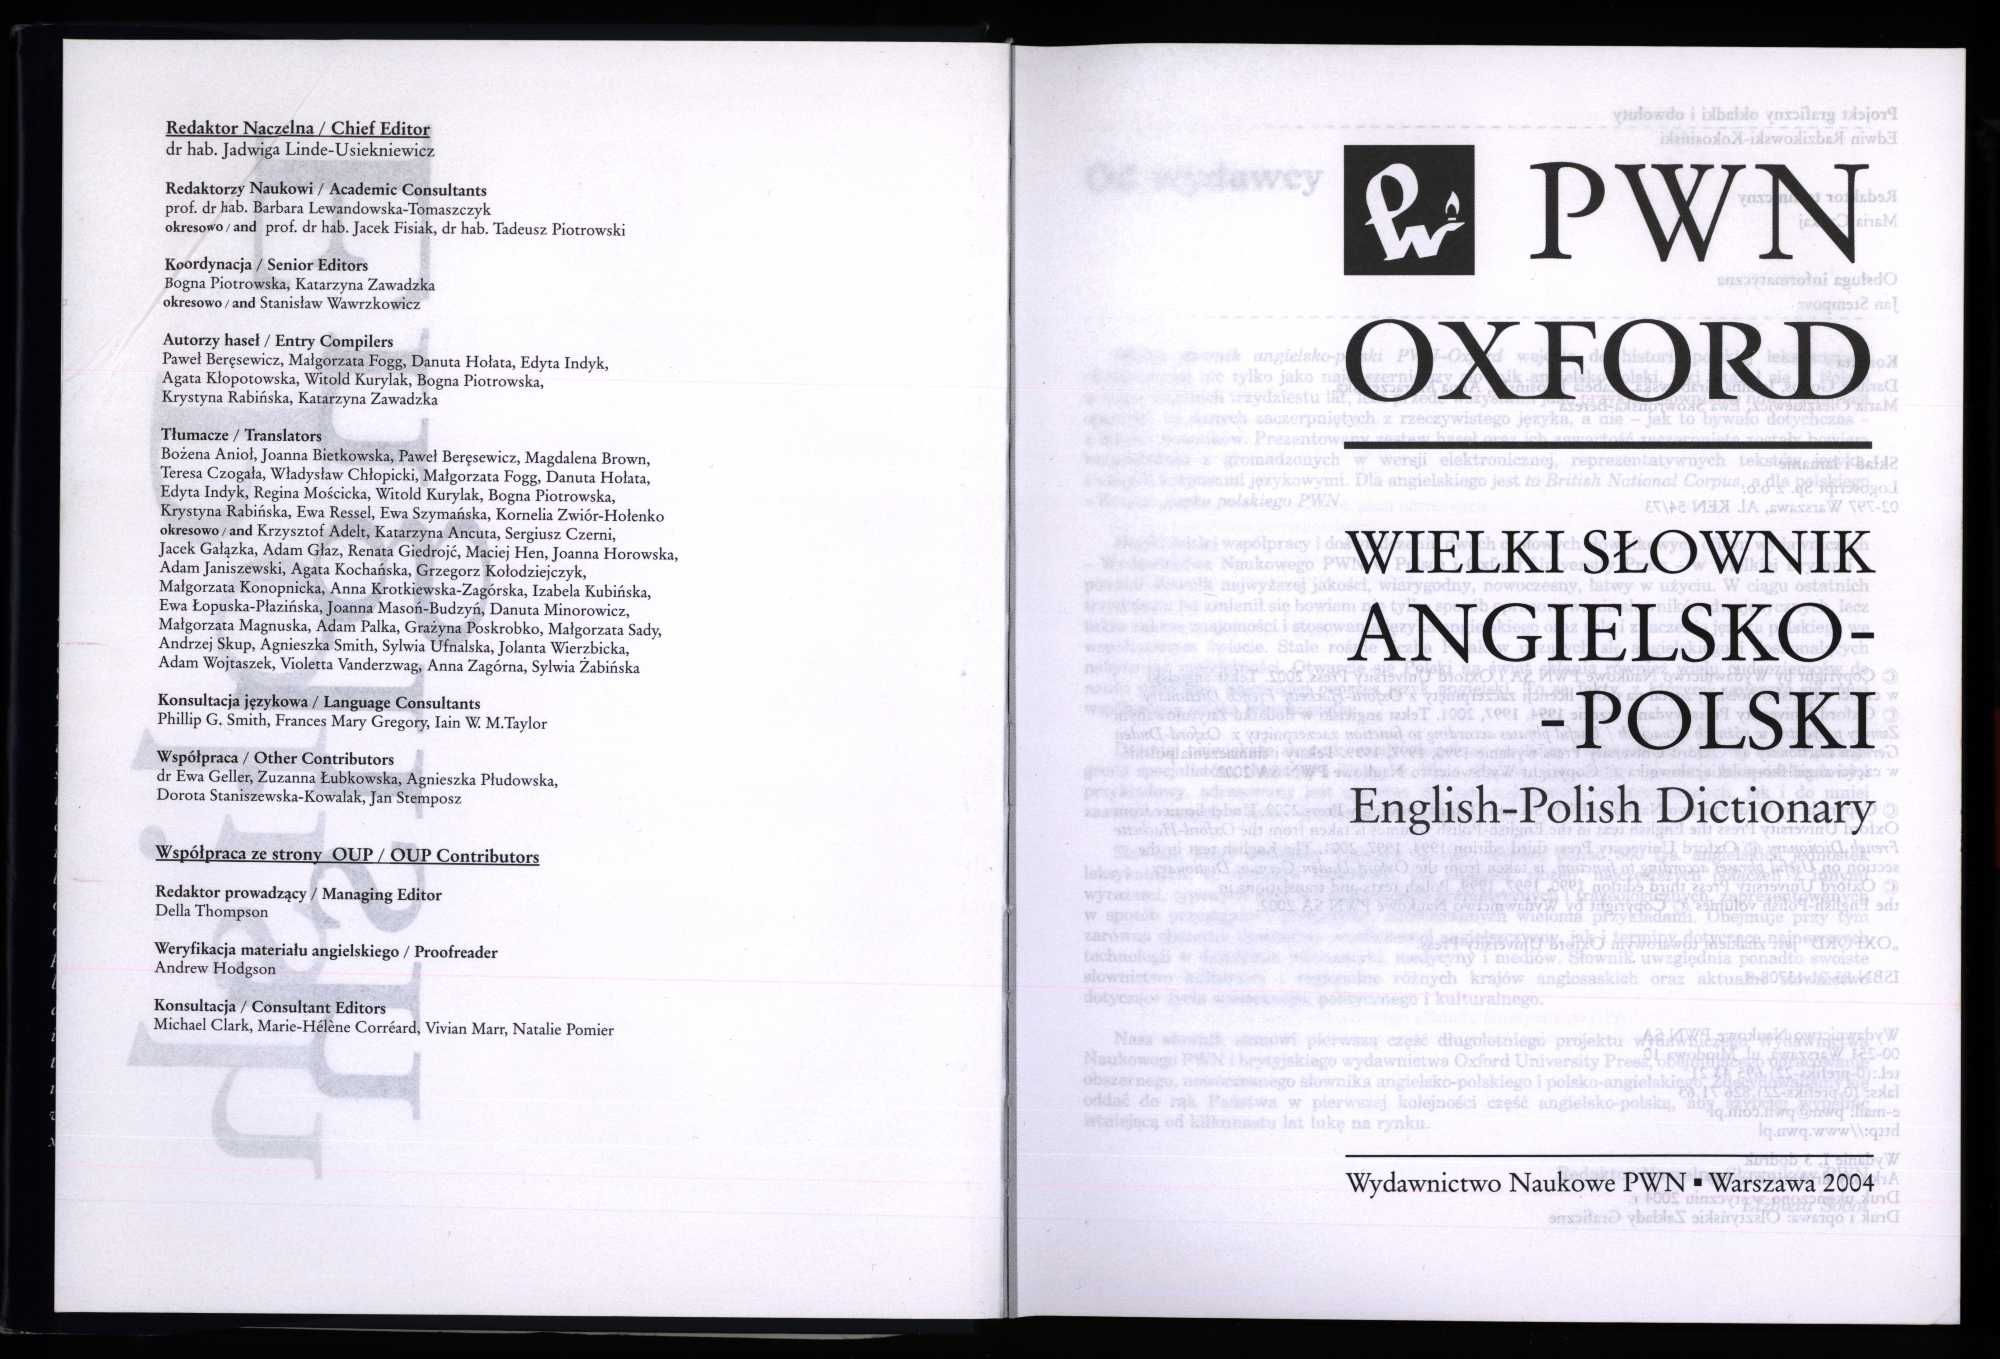 Wielki słownik Pwn Oxford angielsko-polski + płyty CD